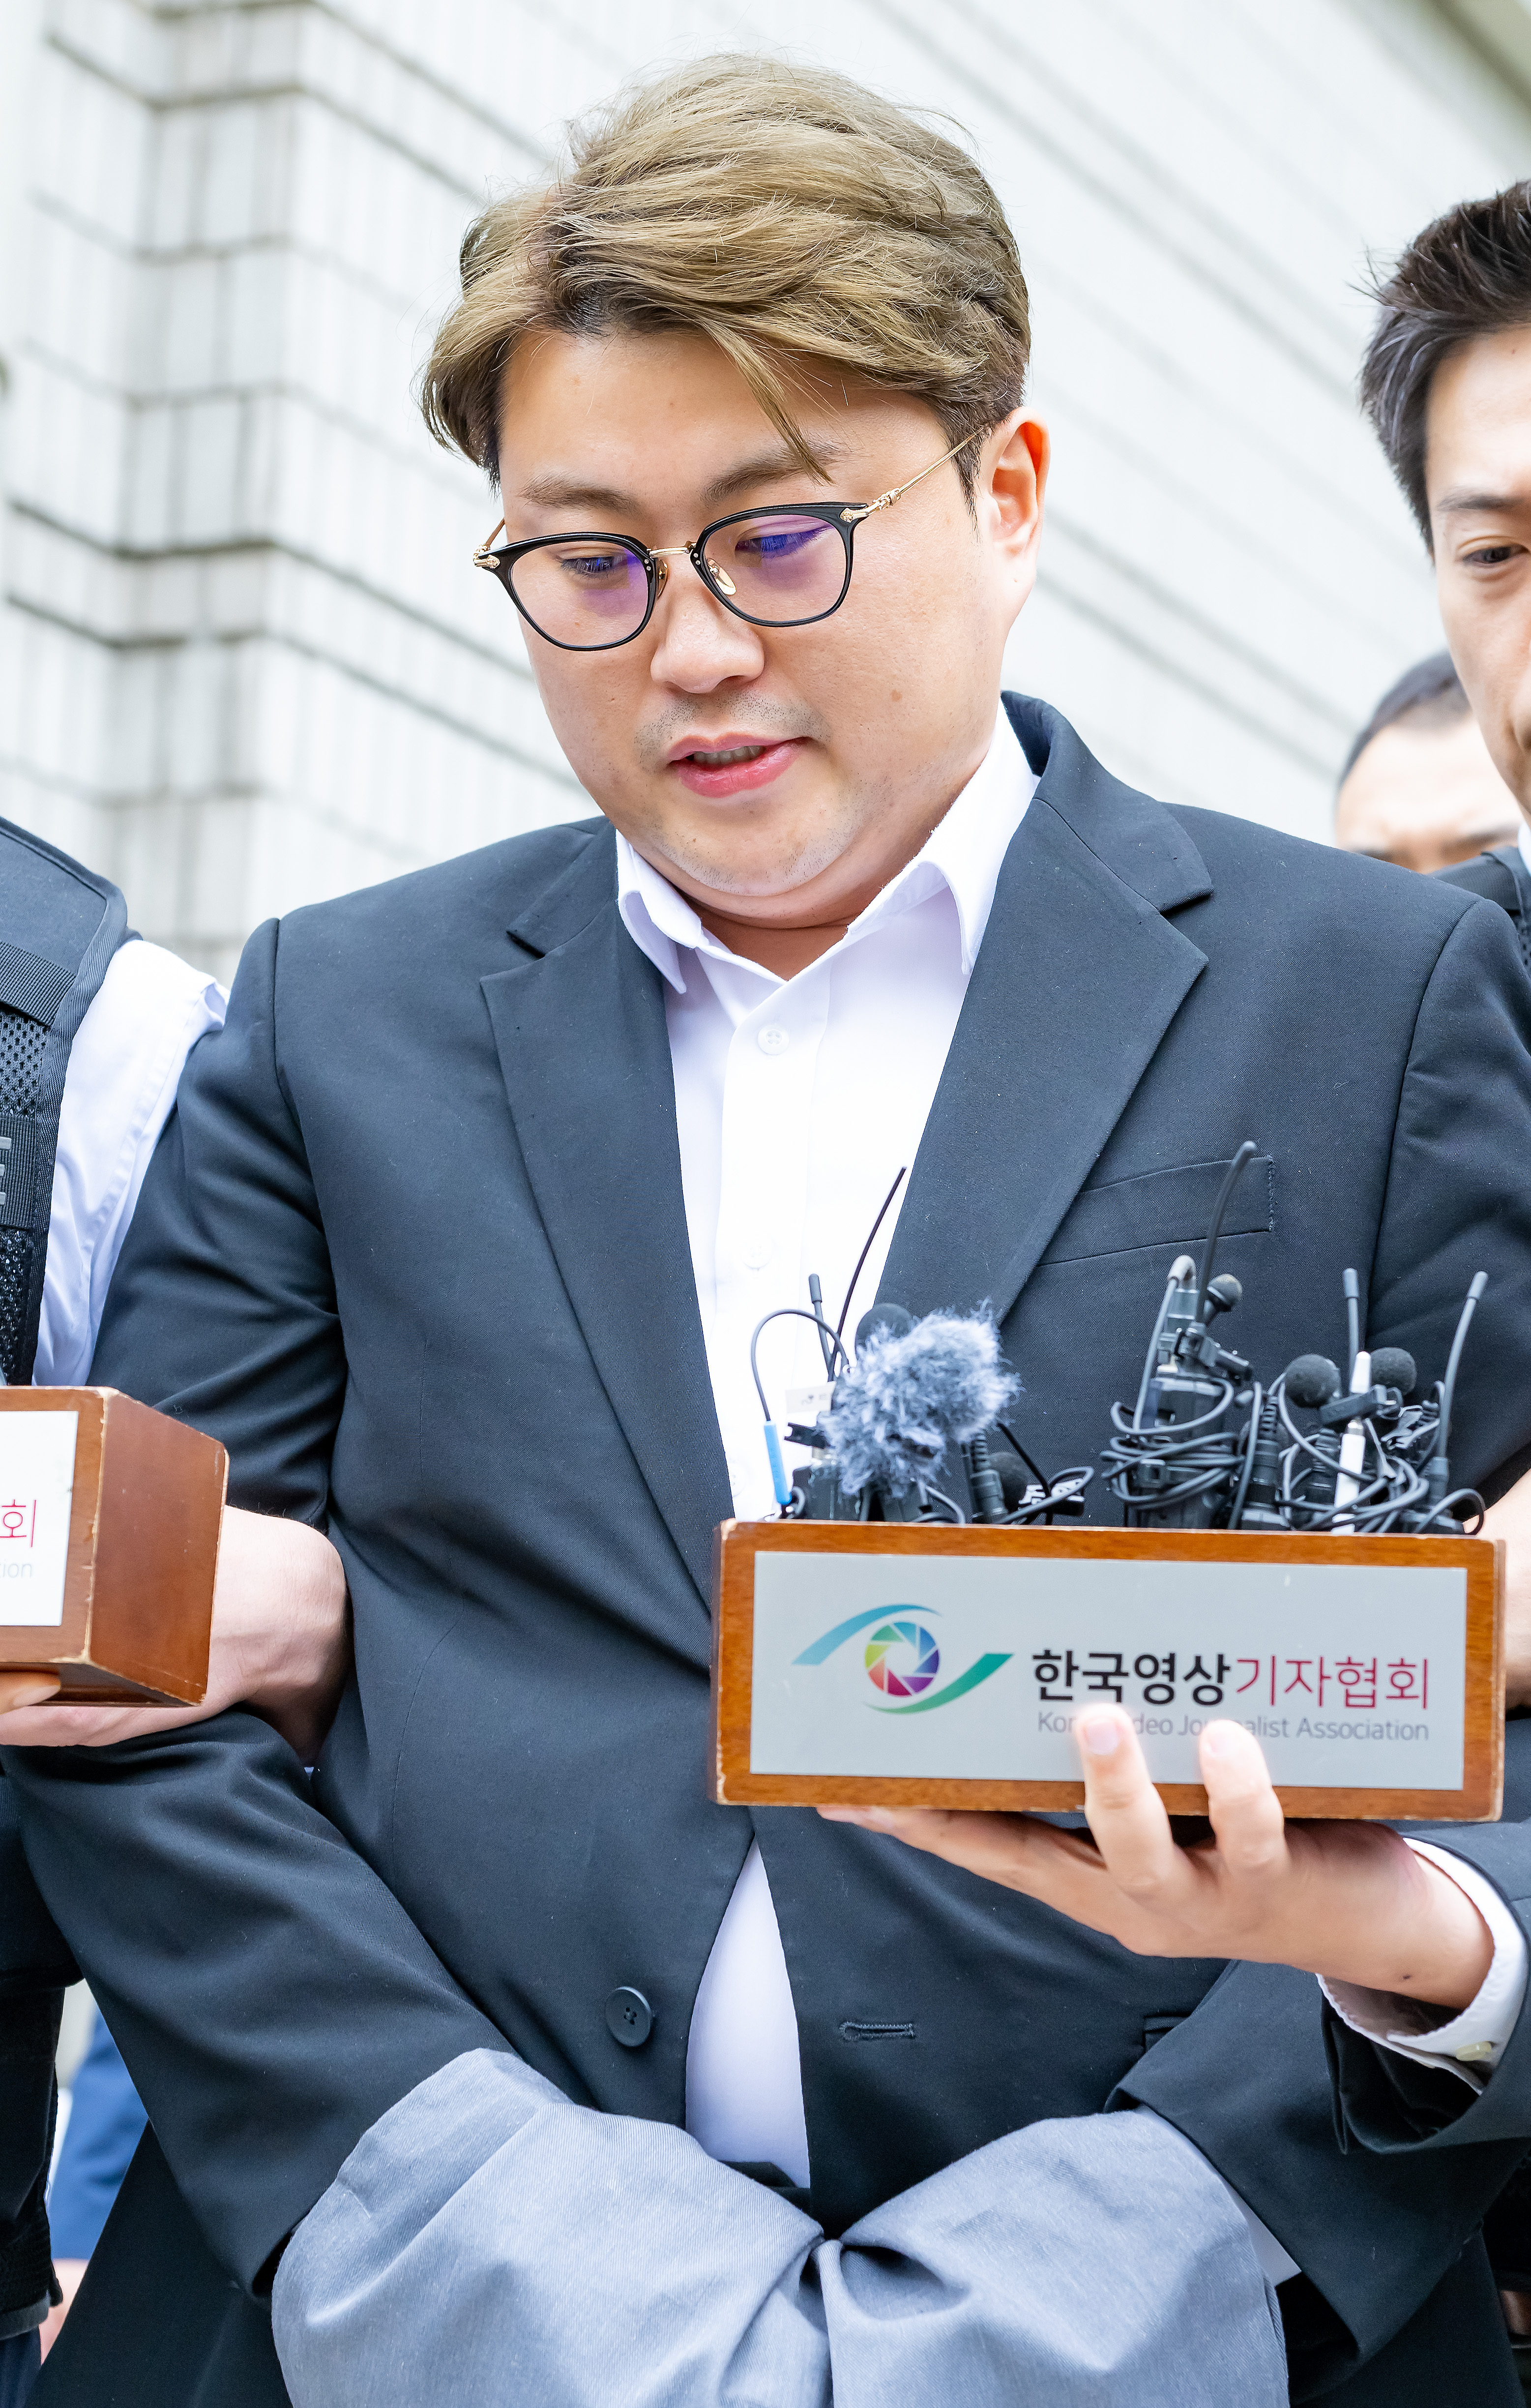  [Y이슈] 김호중 구속 기소, 음주운전 혐의 제외 '왜?'